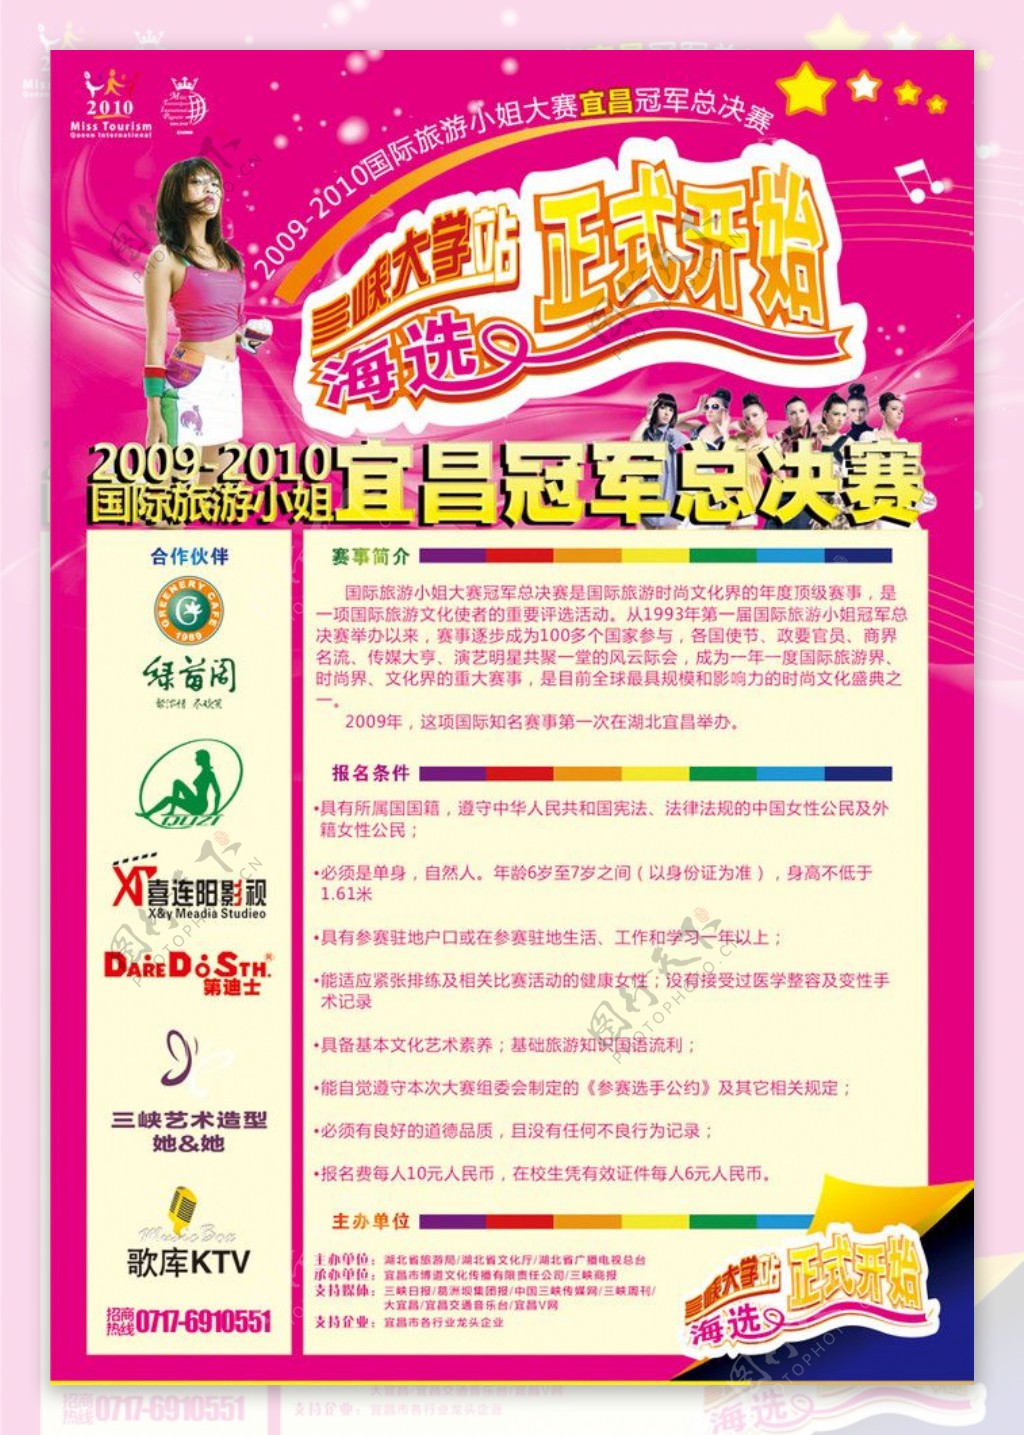 国际旅游小姐宜昌冠军总决赛三峡大学站海选报名正式开始图片